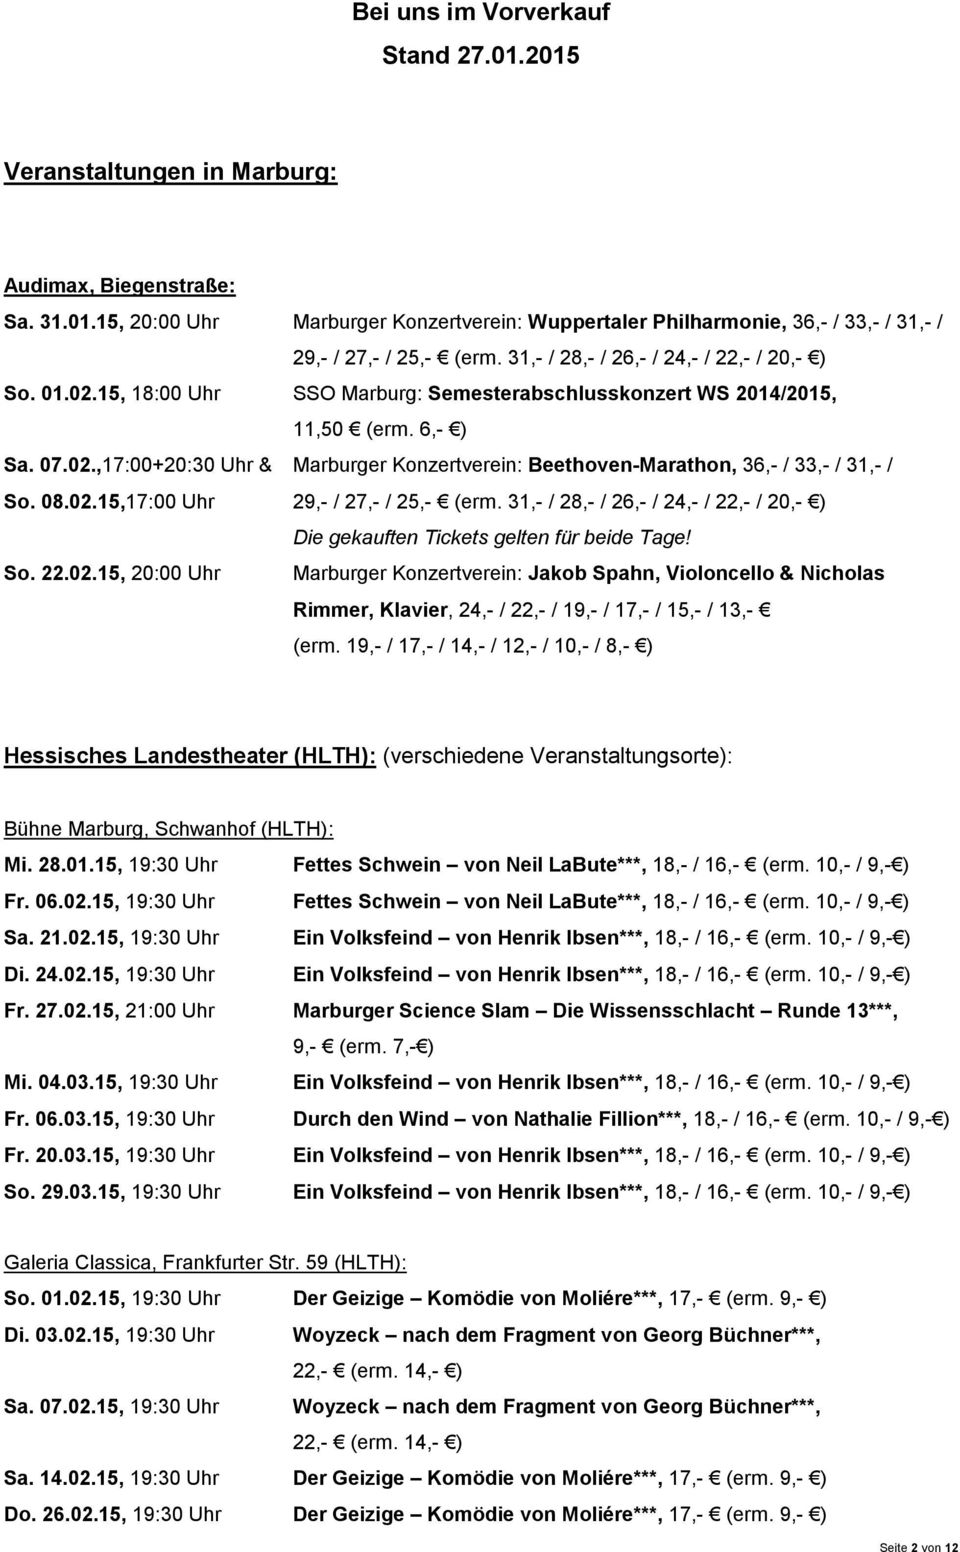 08.02.15,17:00 Uhr 29,- / 27,- / 25,- (erm. 31,- / 28,- / 26,- / 24,- / 22,- / 20,- ) Die gekauften Tickets gelten für beide Tage! So. 22.02.15, 20:00 Uhr Marburger Konzertverein: Jakob Spahn, Violoncello & Nicholas Rimmer, Klavier, 24,- / 22,- / 19,- / 17,- / 15,- / 13,- (erm.